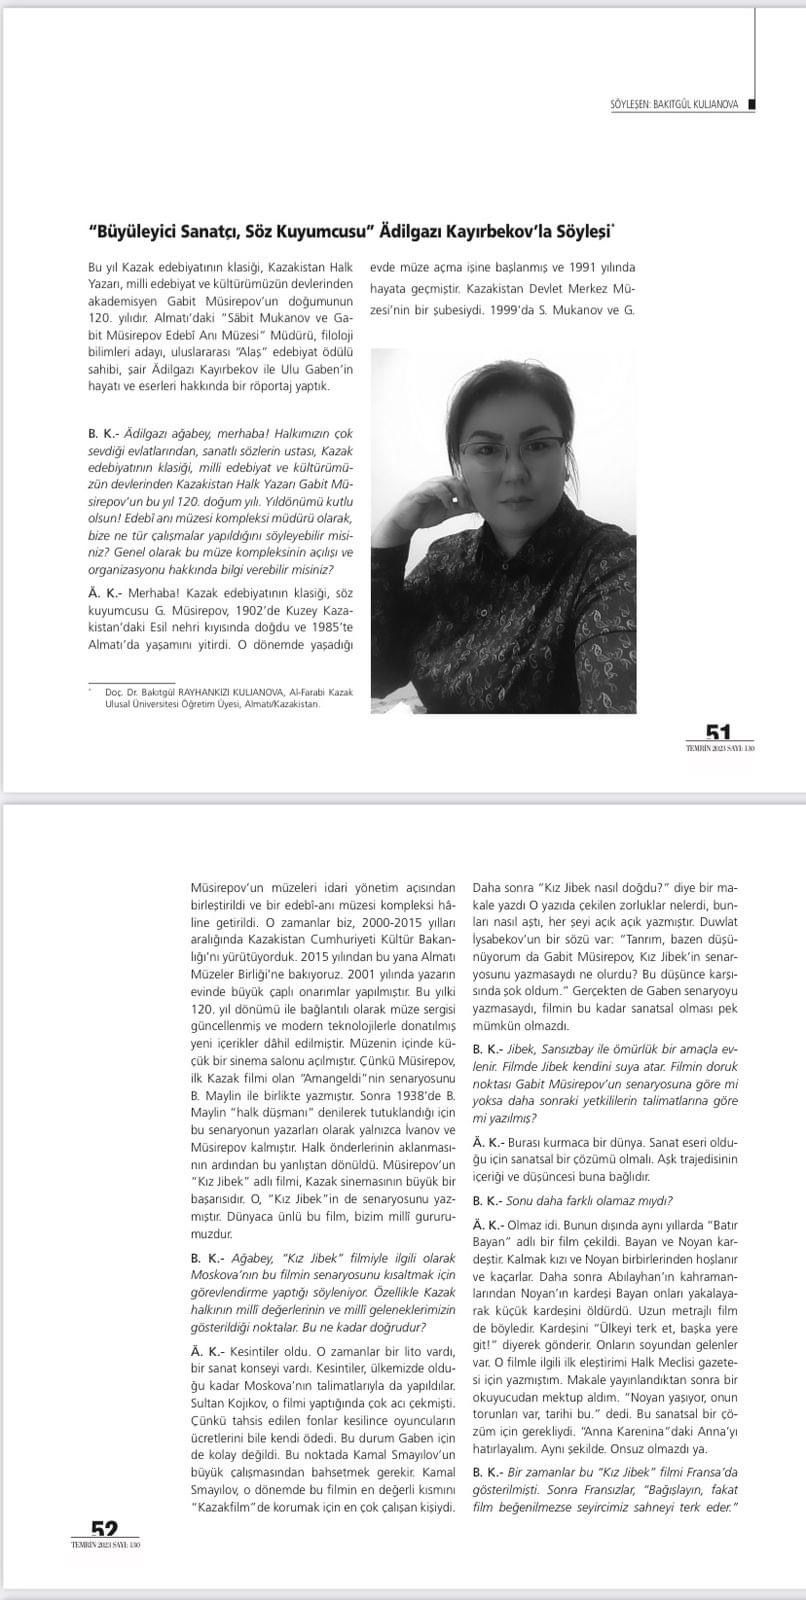 Ученый  кафедры казахского языкознания имени А. Байтурсынова дала интервью для турецкого журнала.